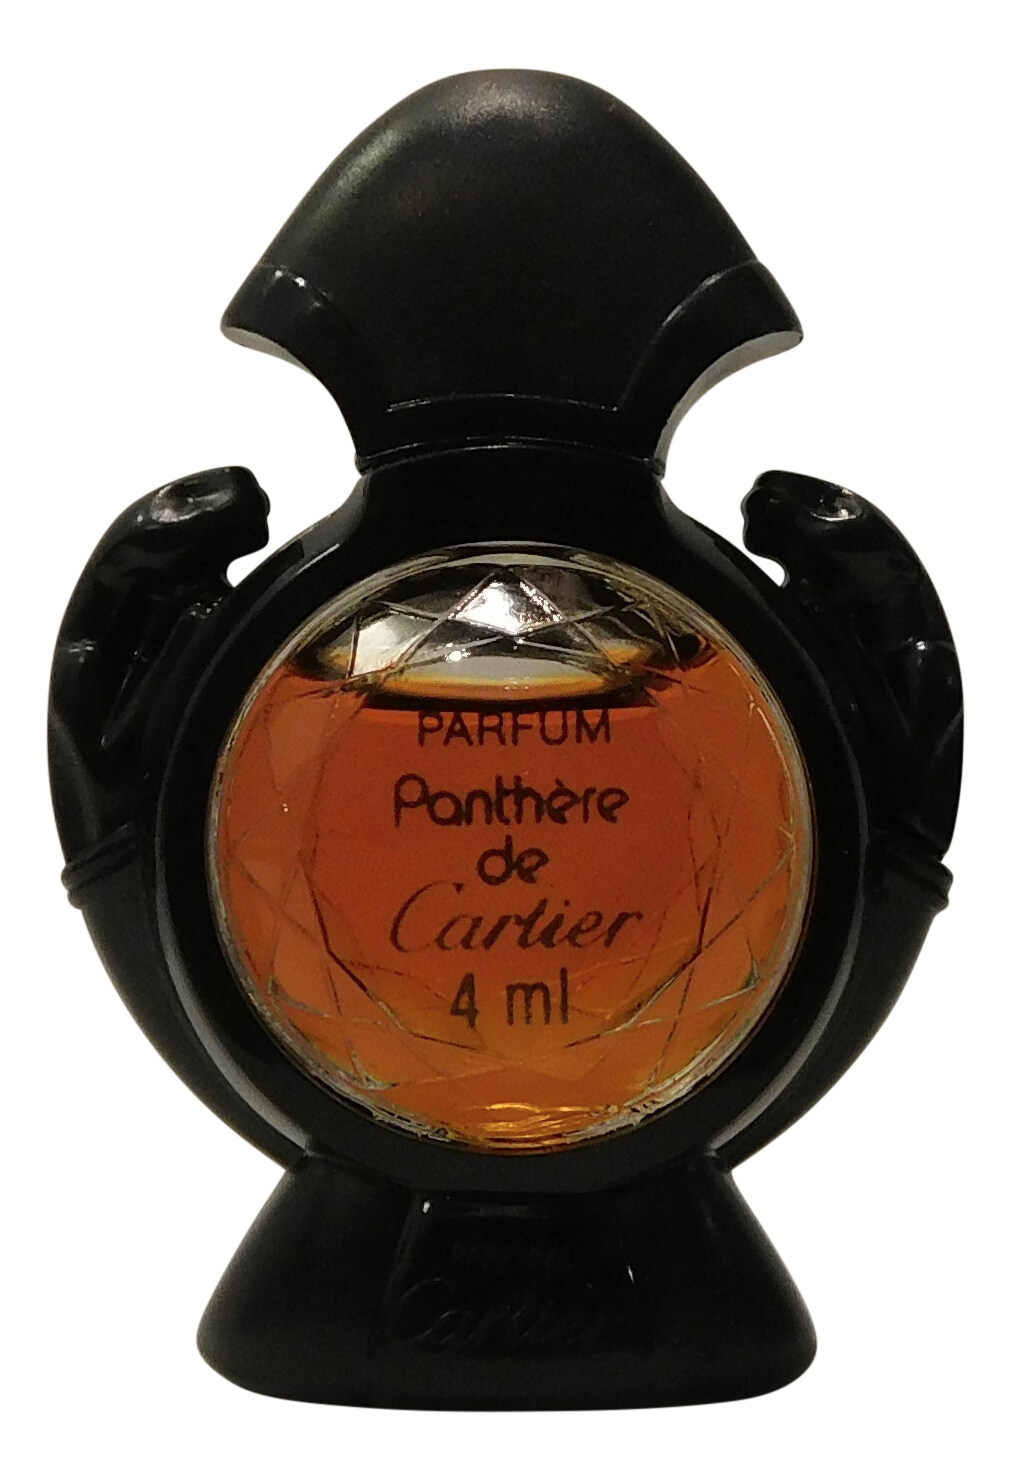 Cartier - Panthère de Cartier Parfum 